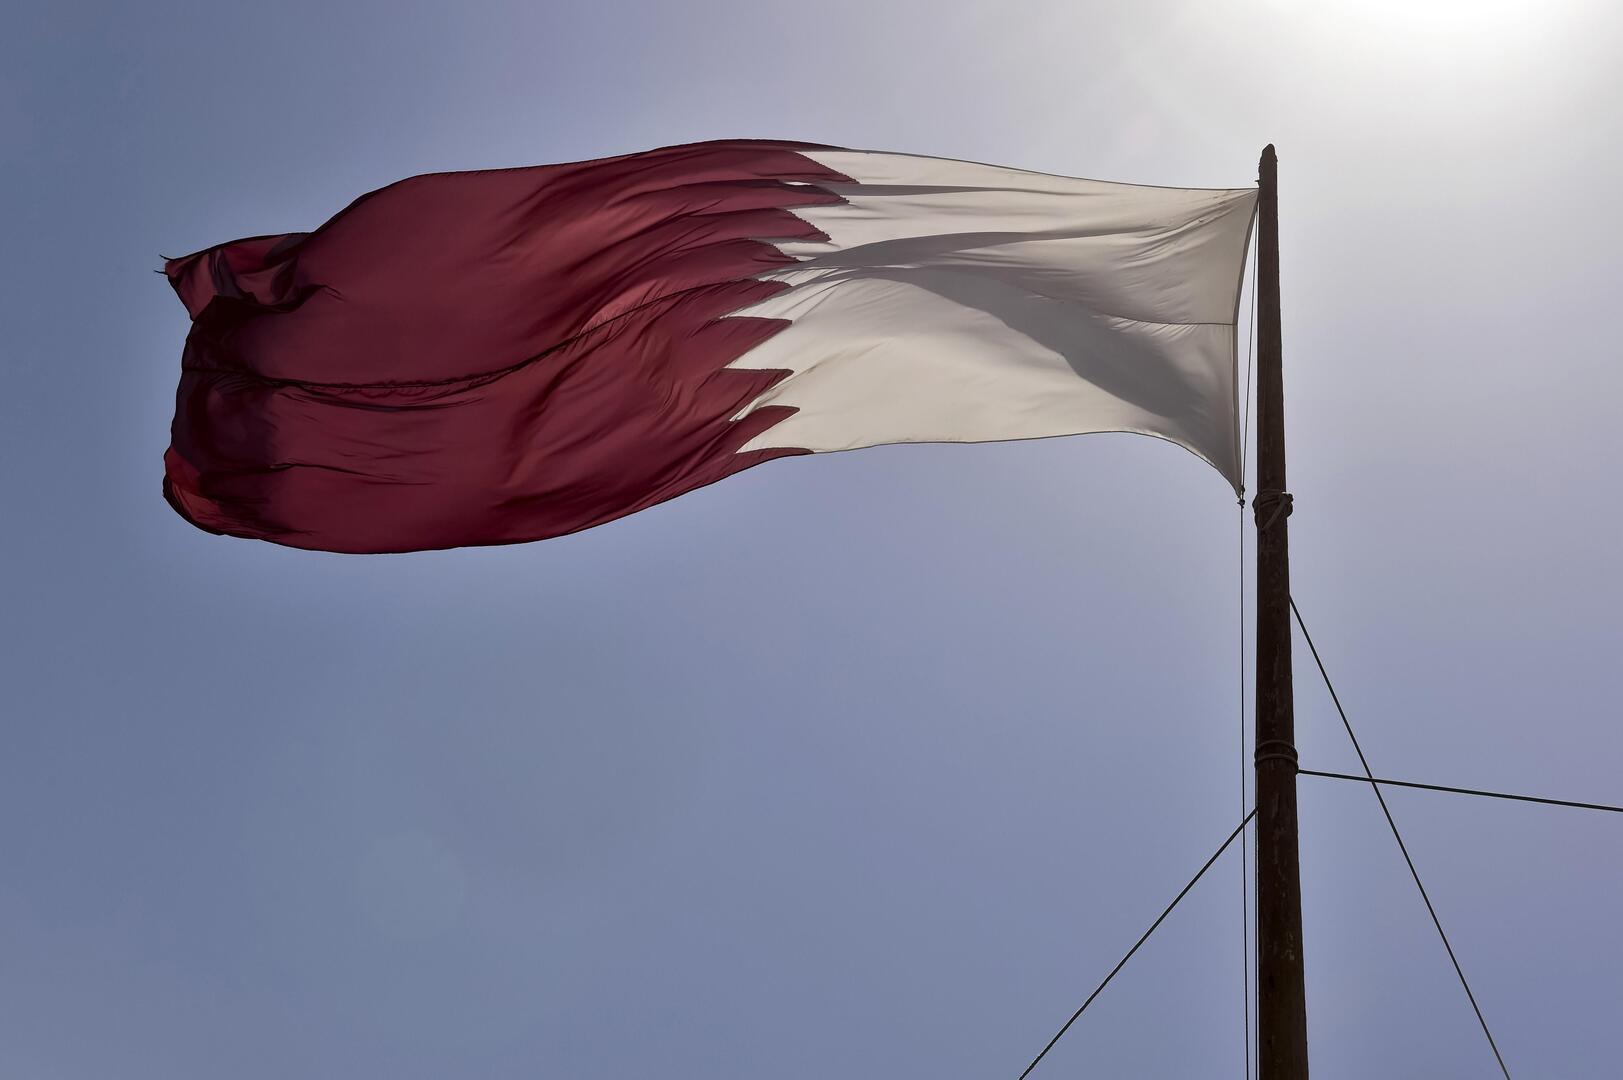 الدوحة توجه اتهامات لدمشق